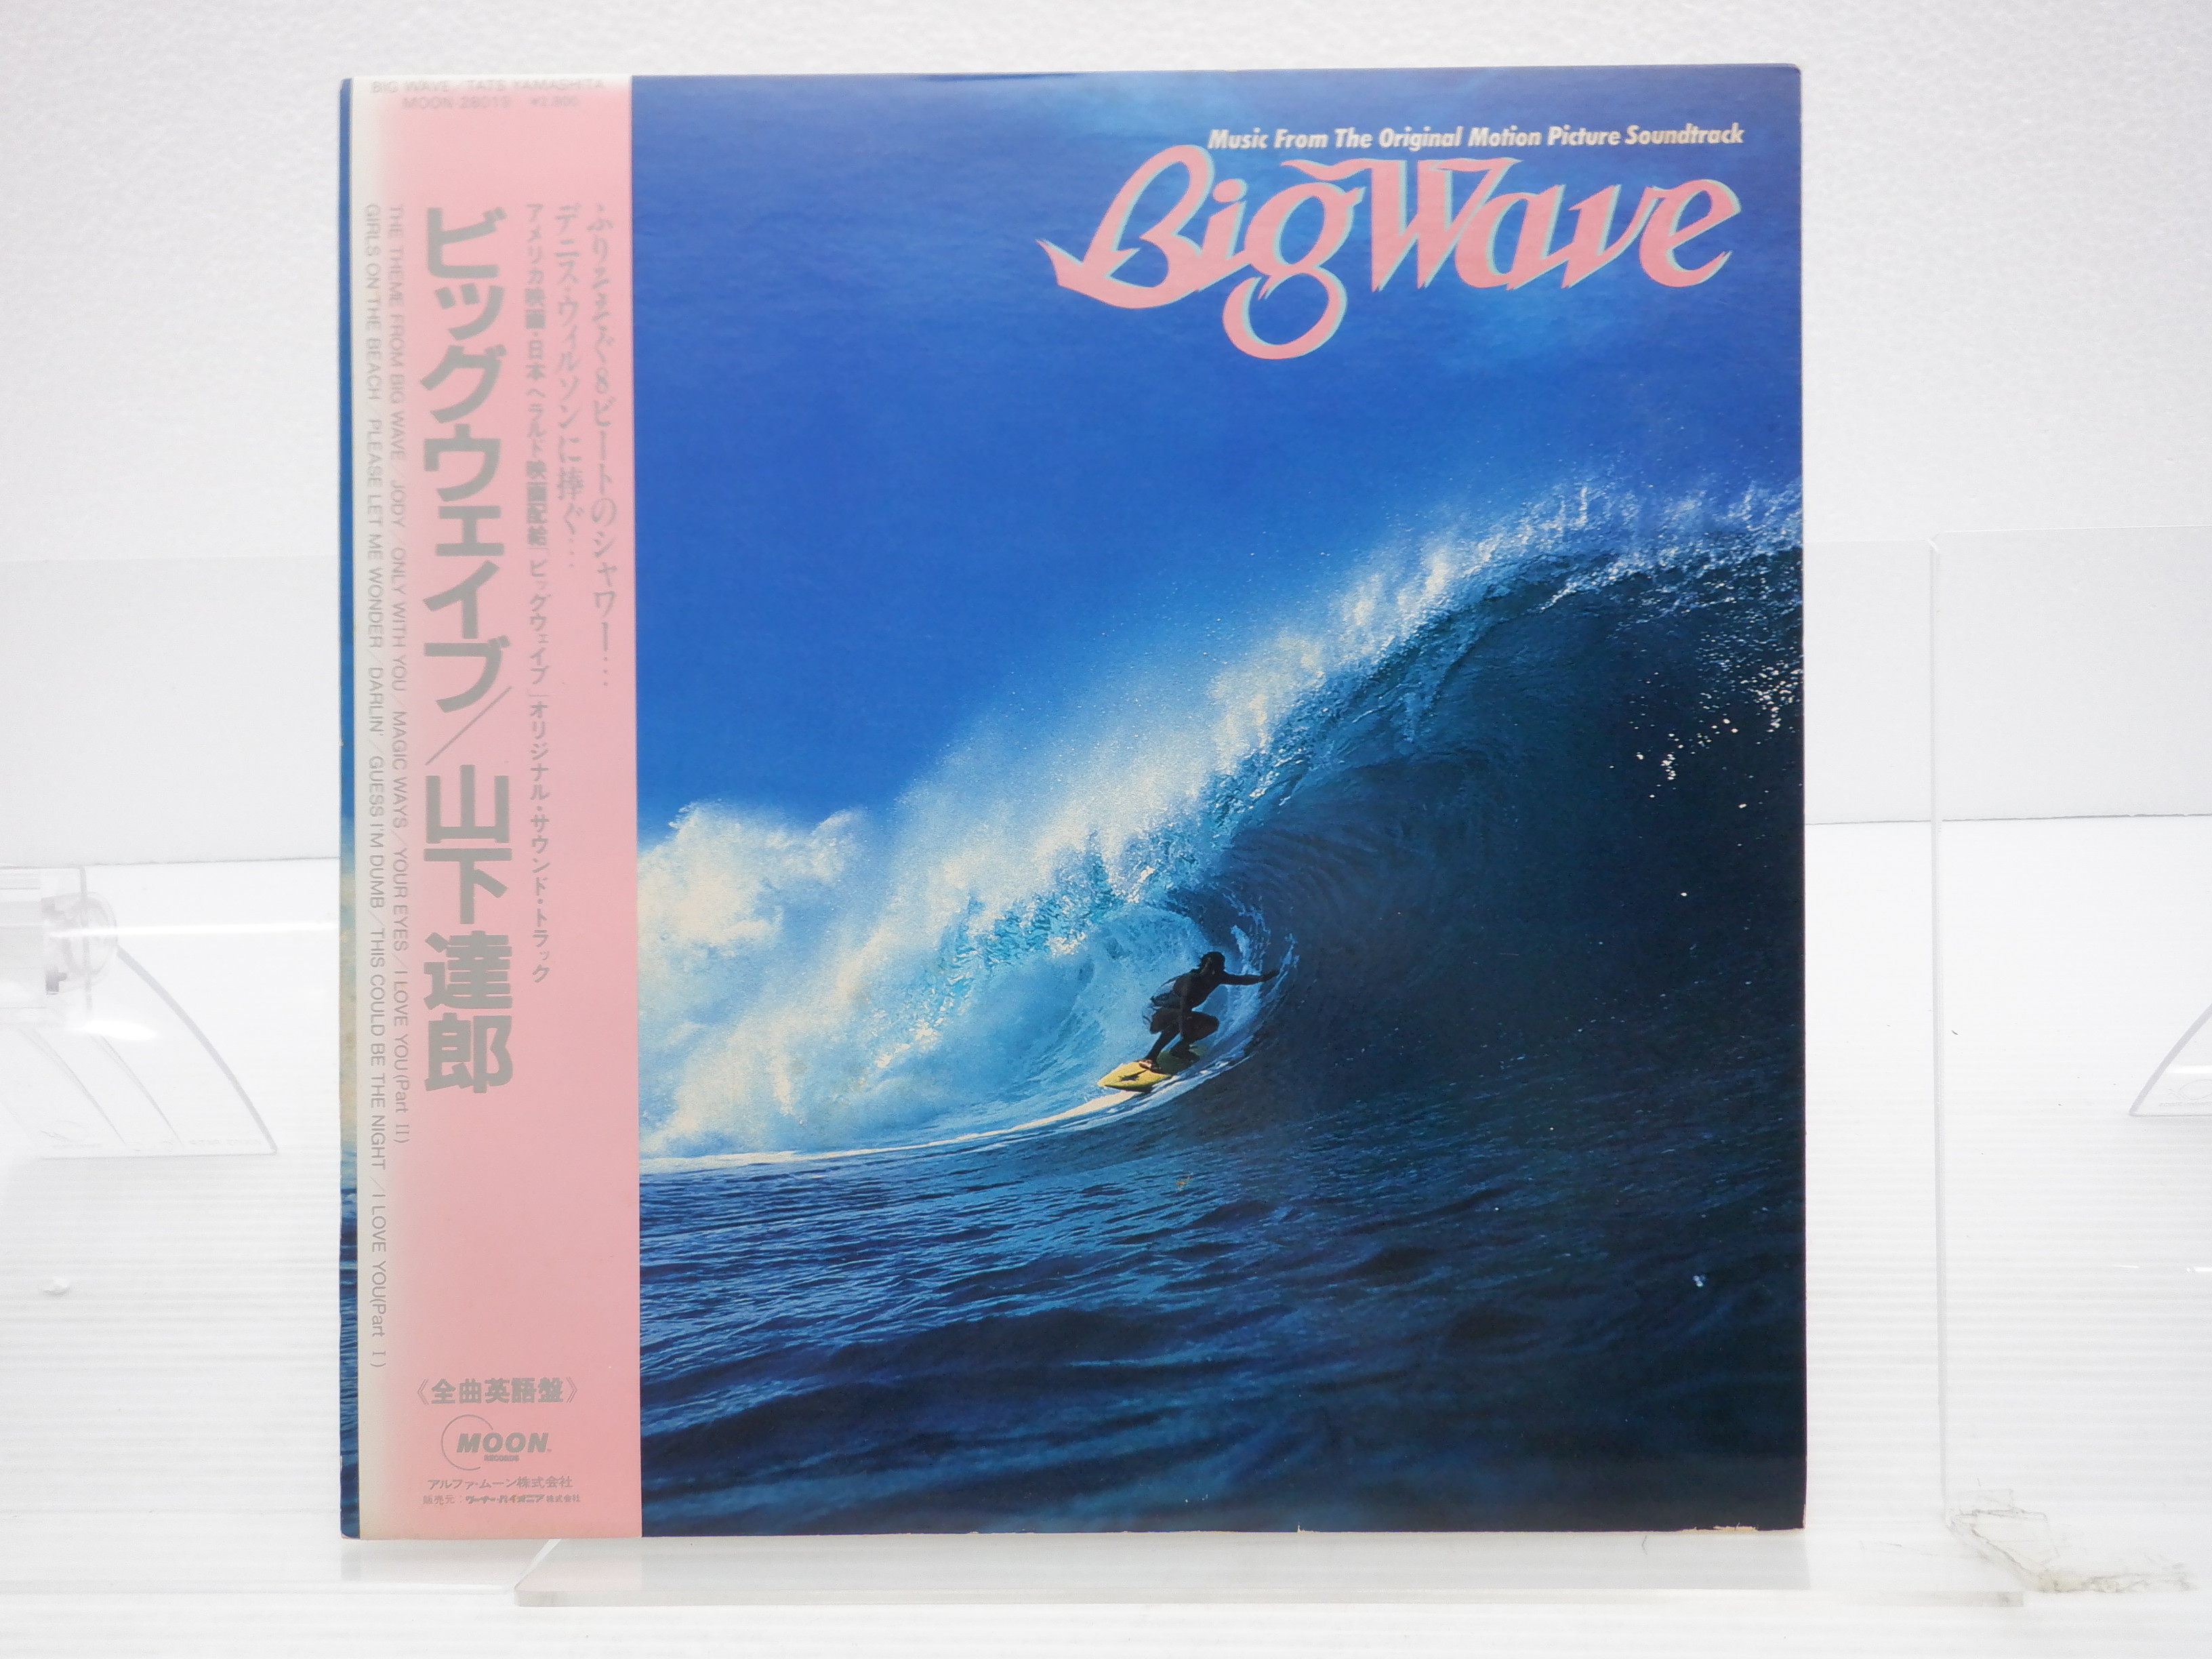 レコードLP帯付ビックウェイブ 山下達郎 Big Wave MOON-28019 LP 